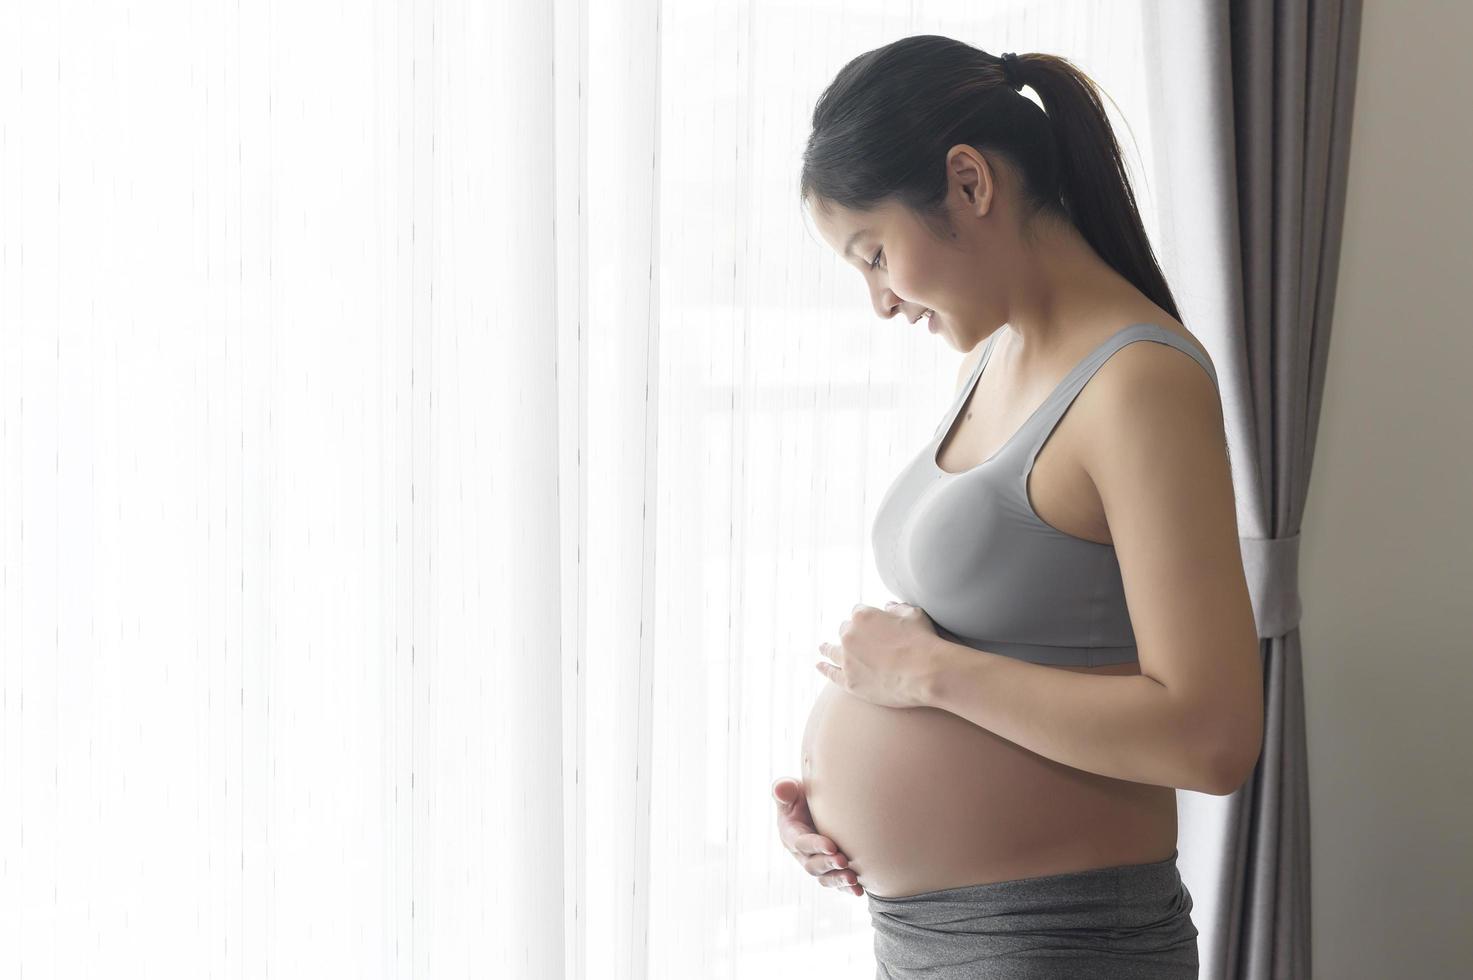 jonge mooie zwangere vrouw thuis, kraam- en zwangerschapszorgconcept foto